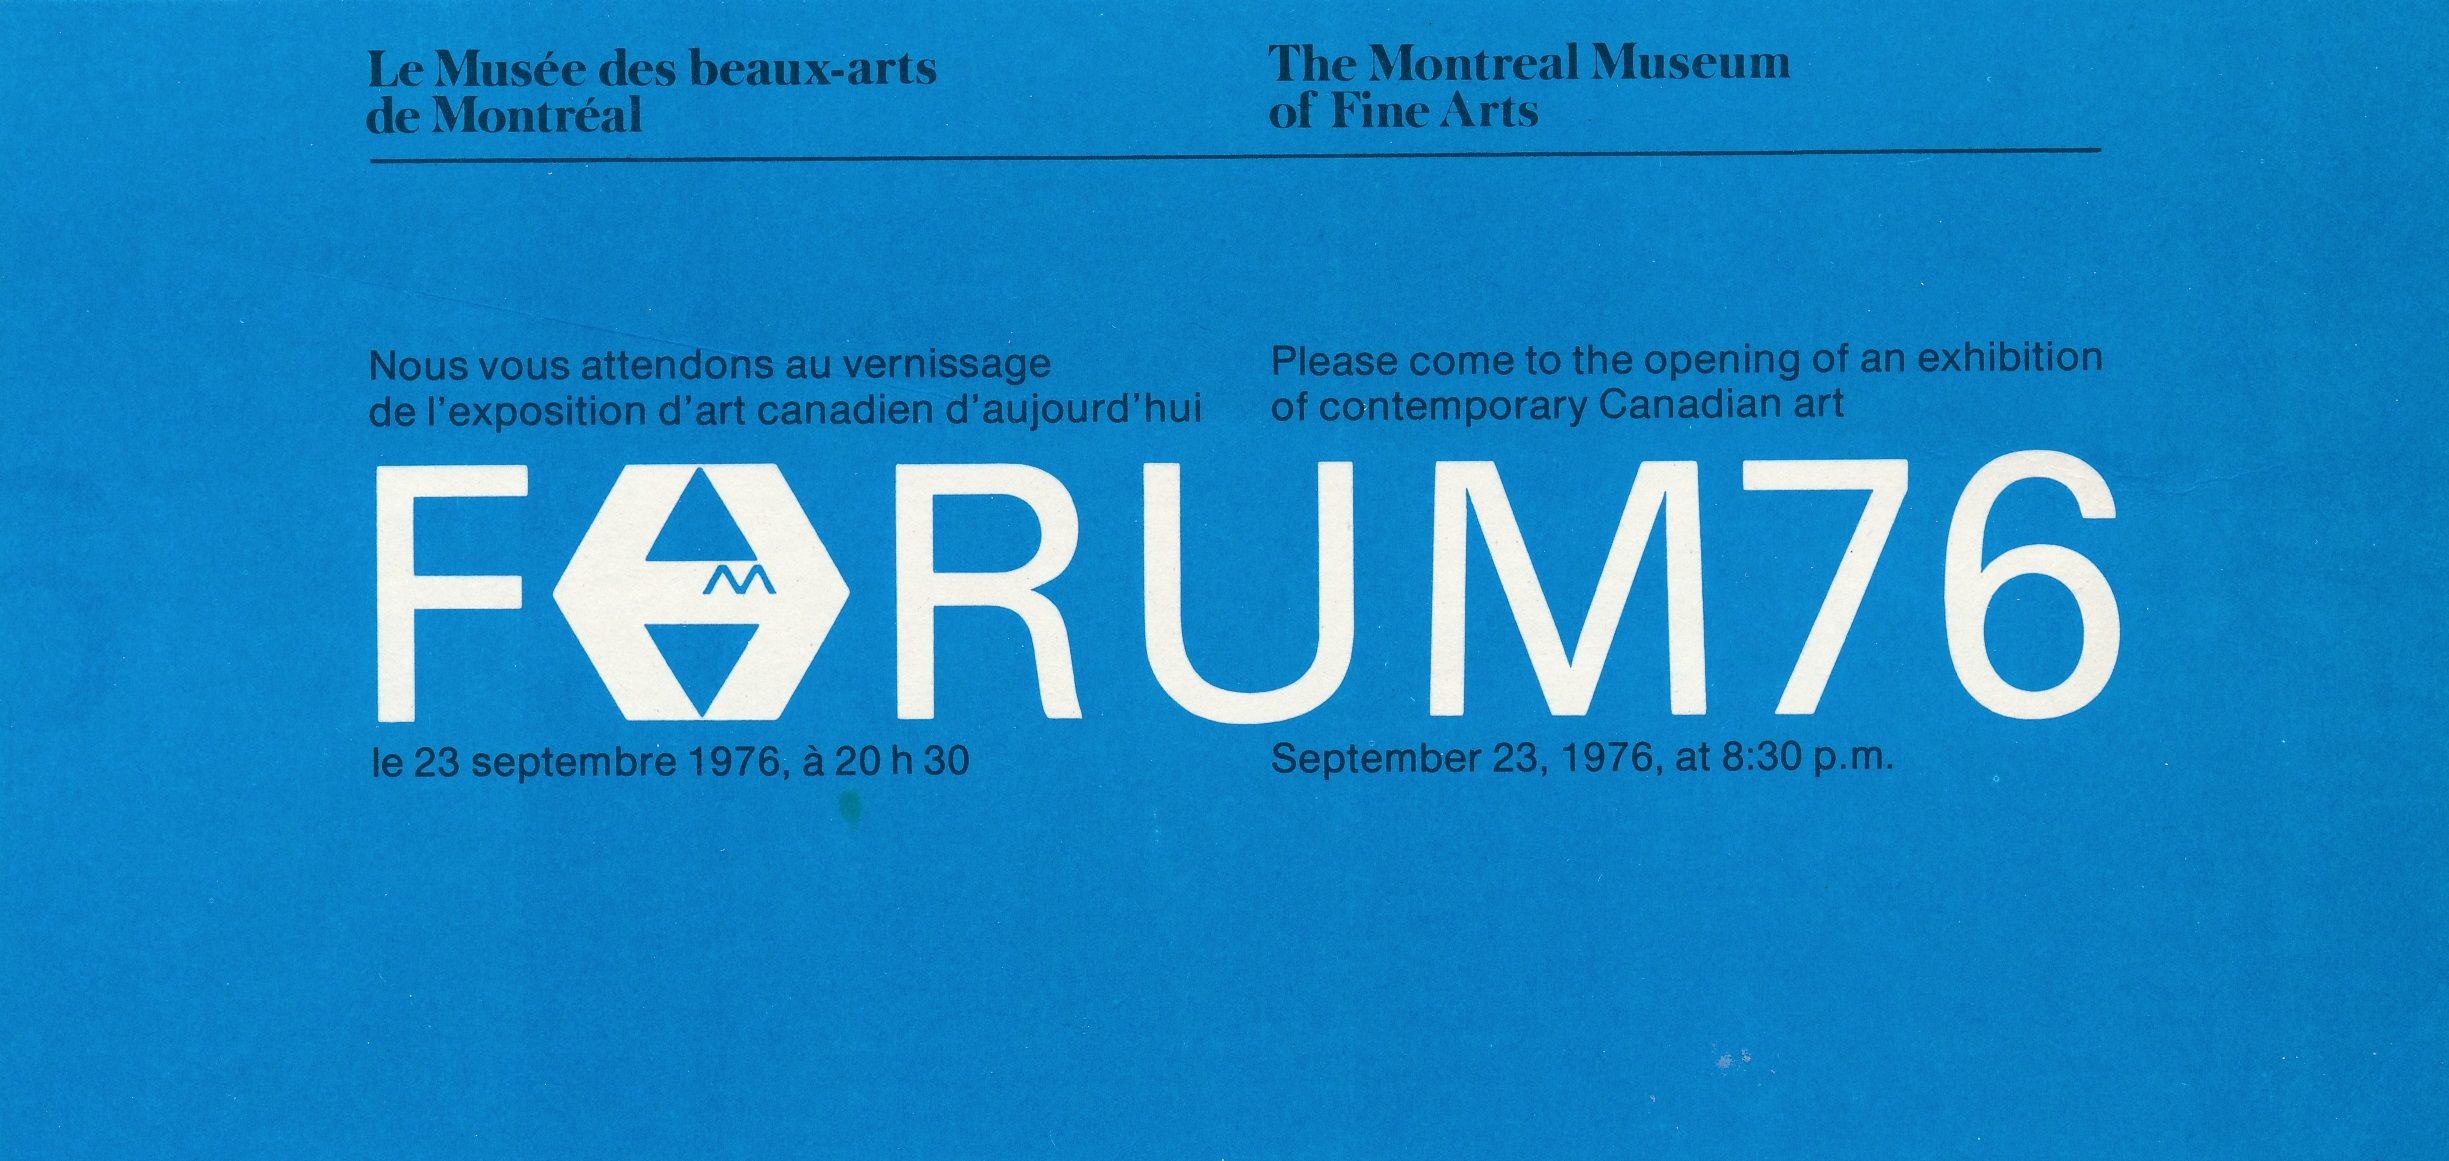 Carton d’invitation de l’exposition Forum 76, Musée des beaux-arts de Montréal, 1976.